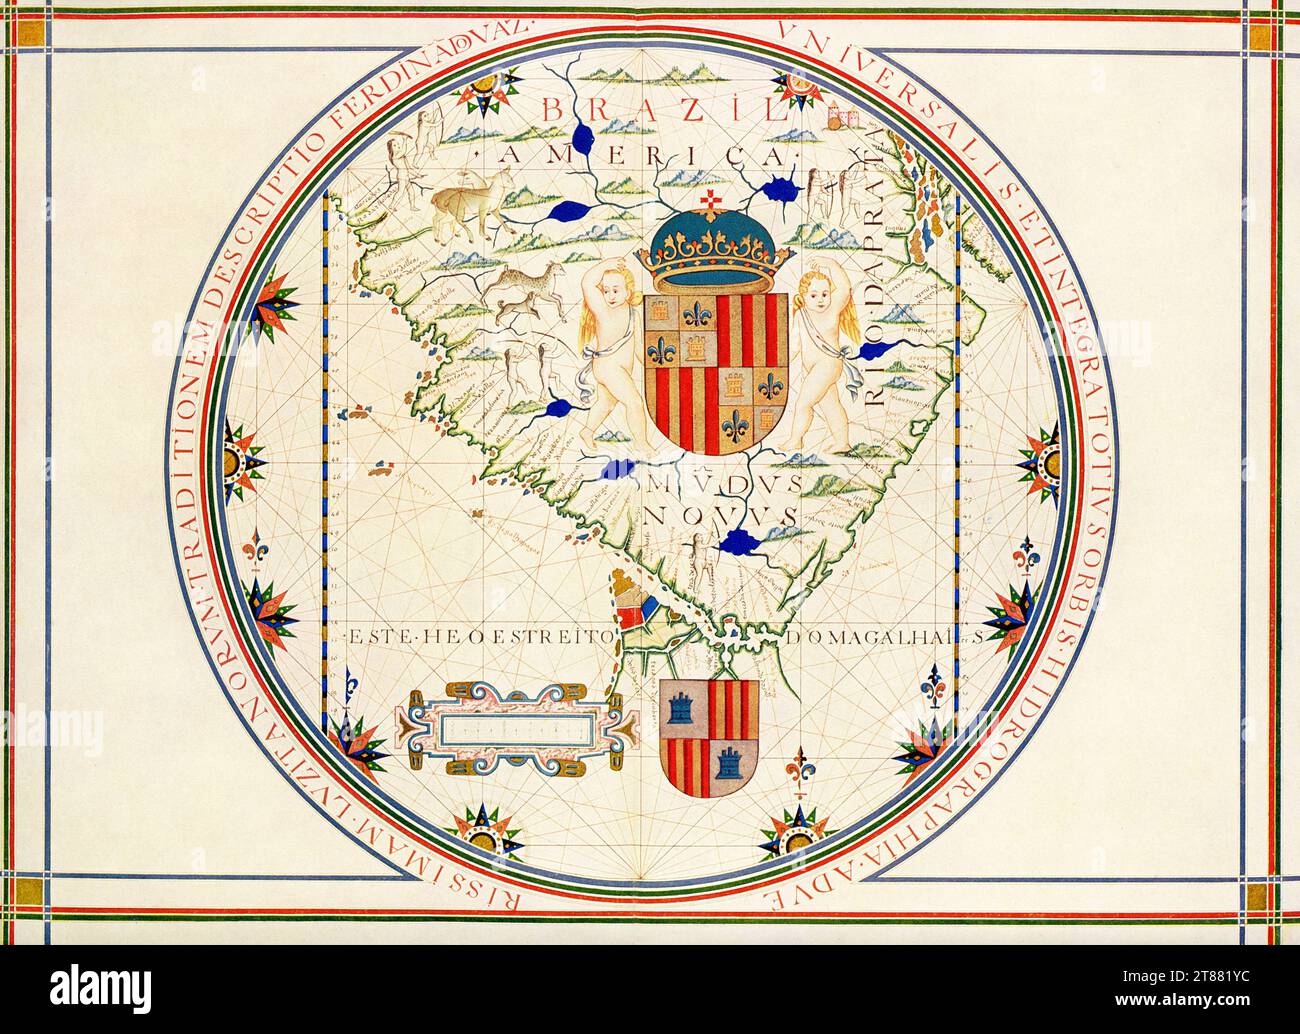 Carte de la pointe sud de l'Amérique. D'après une carte de Lisbonne qui date de 1571 qui a été faite par le géographe portugais Fernao Vaz Dourado. Cette carte est attribuée au cartographe, navigateur et enlumineur portugais Fernão Vaz Dourado (vers 1520-80), sur la base de similitudes entre les autres cartes de Vaz et les illustrations de ce manuscrit. Vaz a produit sept atlas marins brillamment illuminés entre 1568 et 1580. Cette carte, tirée de son atlas datant d'environ 1576, montre la pointe sud de l'Amérique du Sud. L'atlas fait partie des collections de la Bibliothèque nationale du Portugal après 1910. Banque D'Images